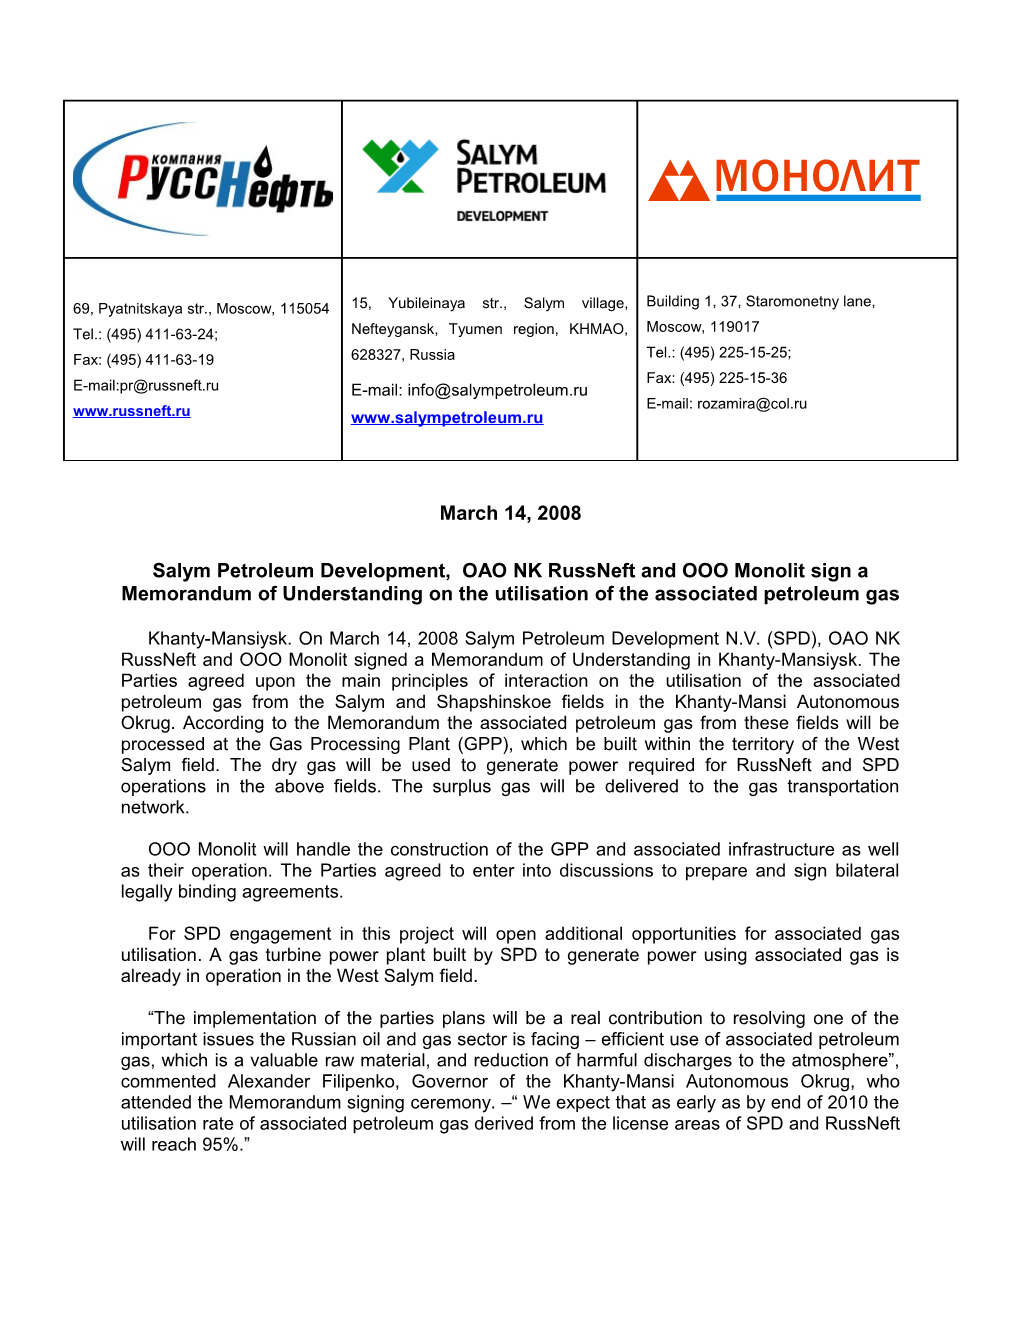 Salym Petroleum Development, OAO NK Russneft and OOO Monolit Sign a Memorandum of Understanding